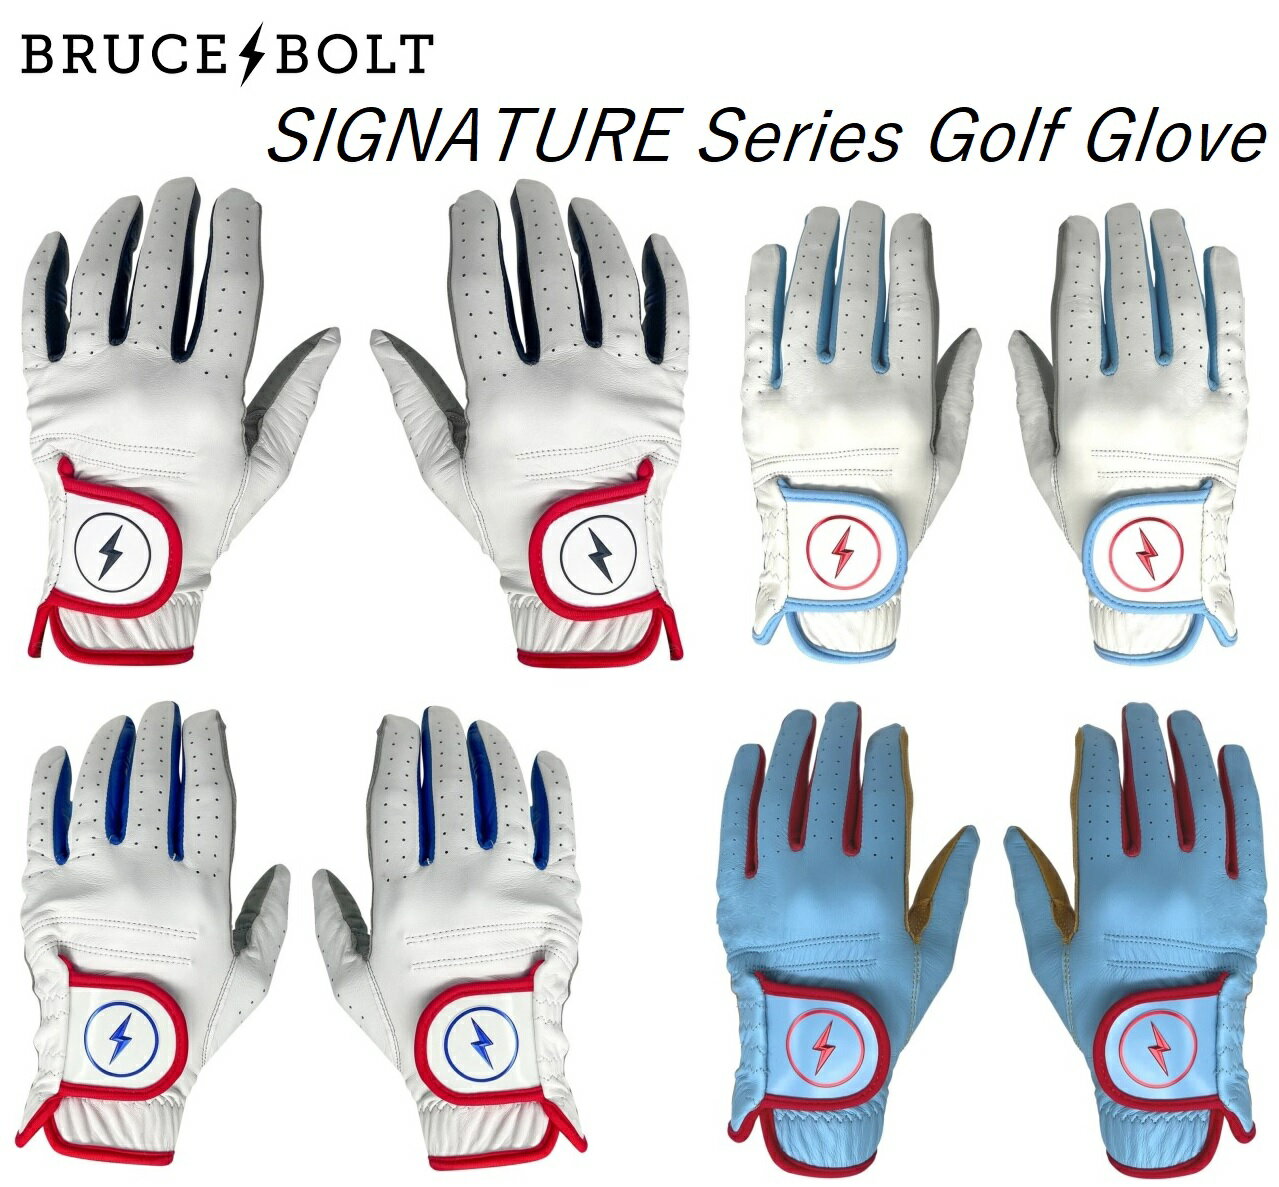 ゴルフグローブ メンズ 一般 スポーツ golf gloves 左手 右手 ブルースボルト シグネチャーシリーズ